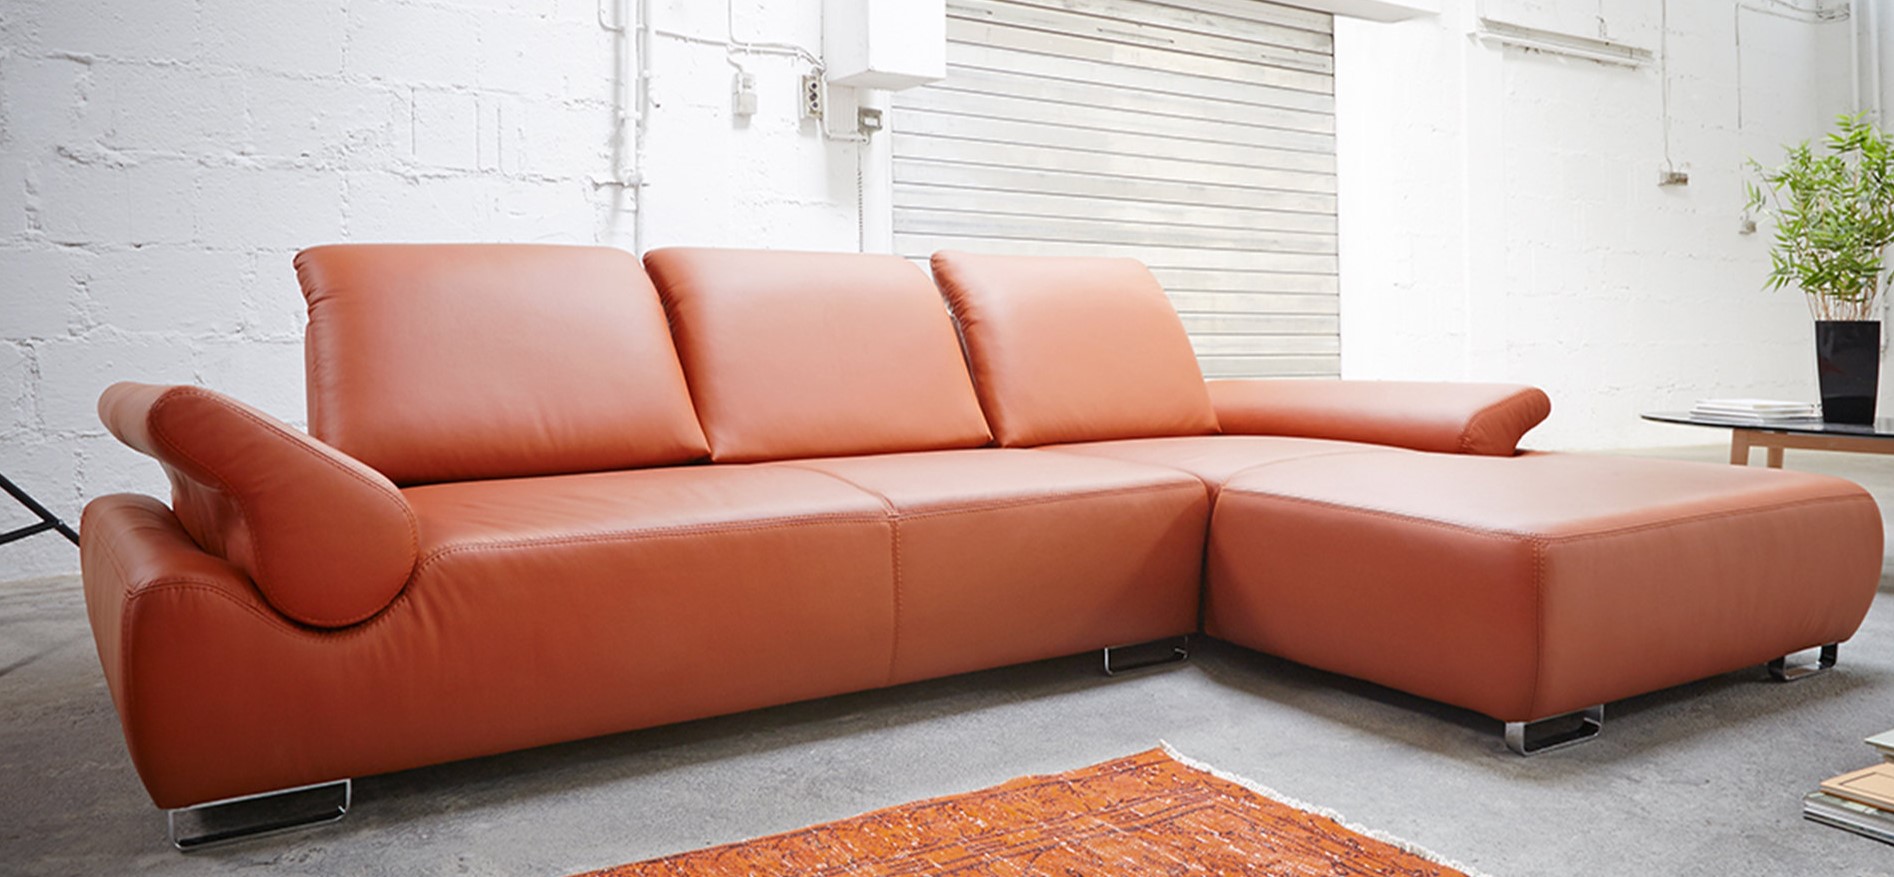 Оранжевый диван можно использовать в качестве оригинального акцента в гостиной